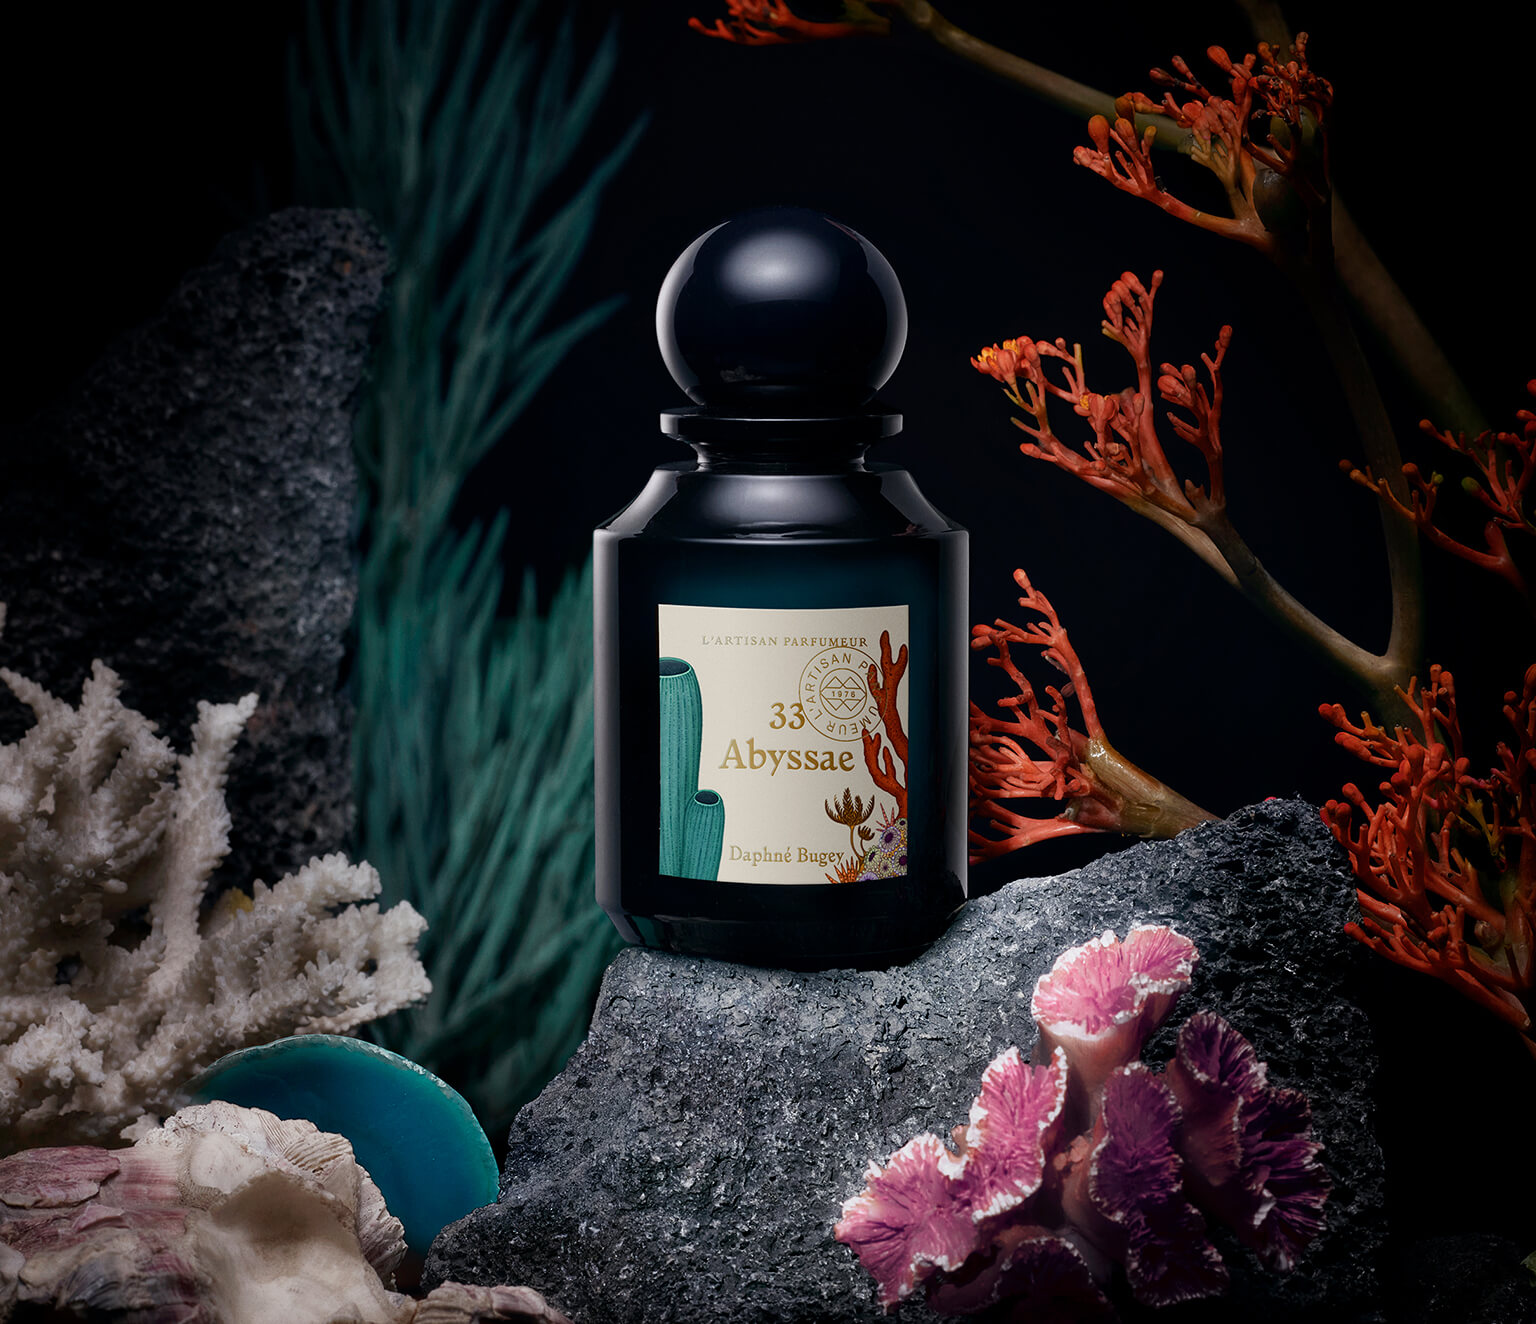 Abyssae, La Botanique's new signature scent